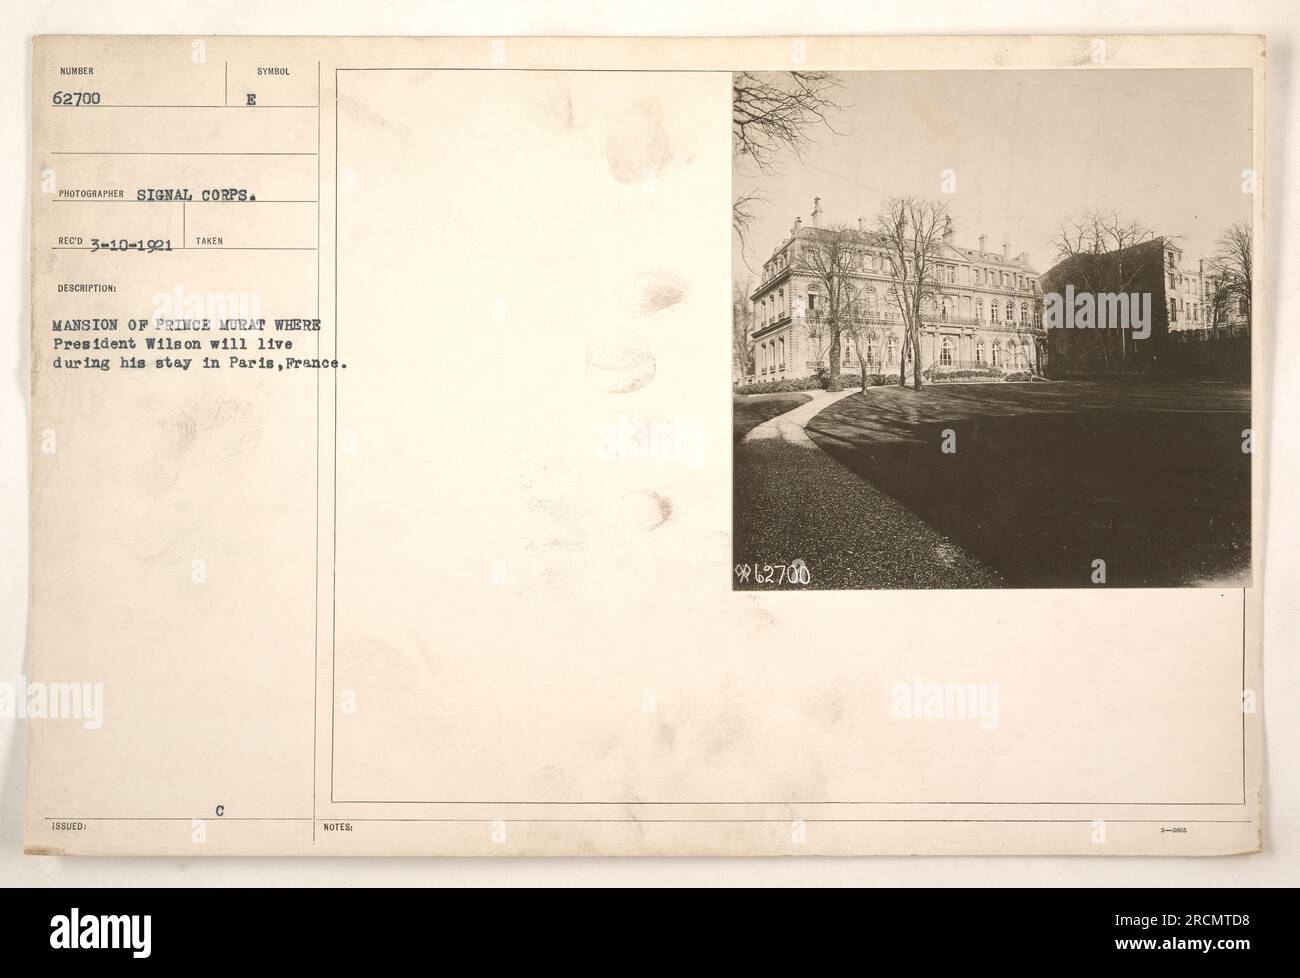 L'immagine mostra la residenza del principe Murat a Parigi, in Francia, dove il presidente Wilson risiedeva durante il suo soggiorno in città. La fotografia è stata scattata da un fotografo del Signal Corps e reca il simbolo della descrizione E. l'immagine è numerata 62700 ed è datata 10 marzo 1921. Foto Stock